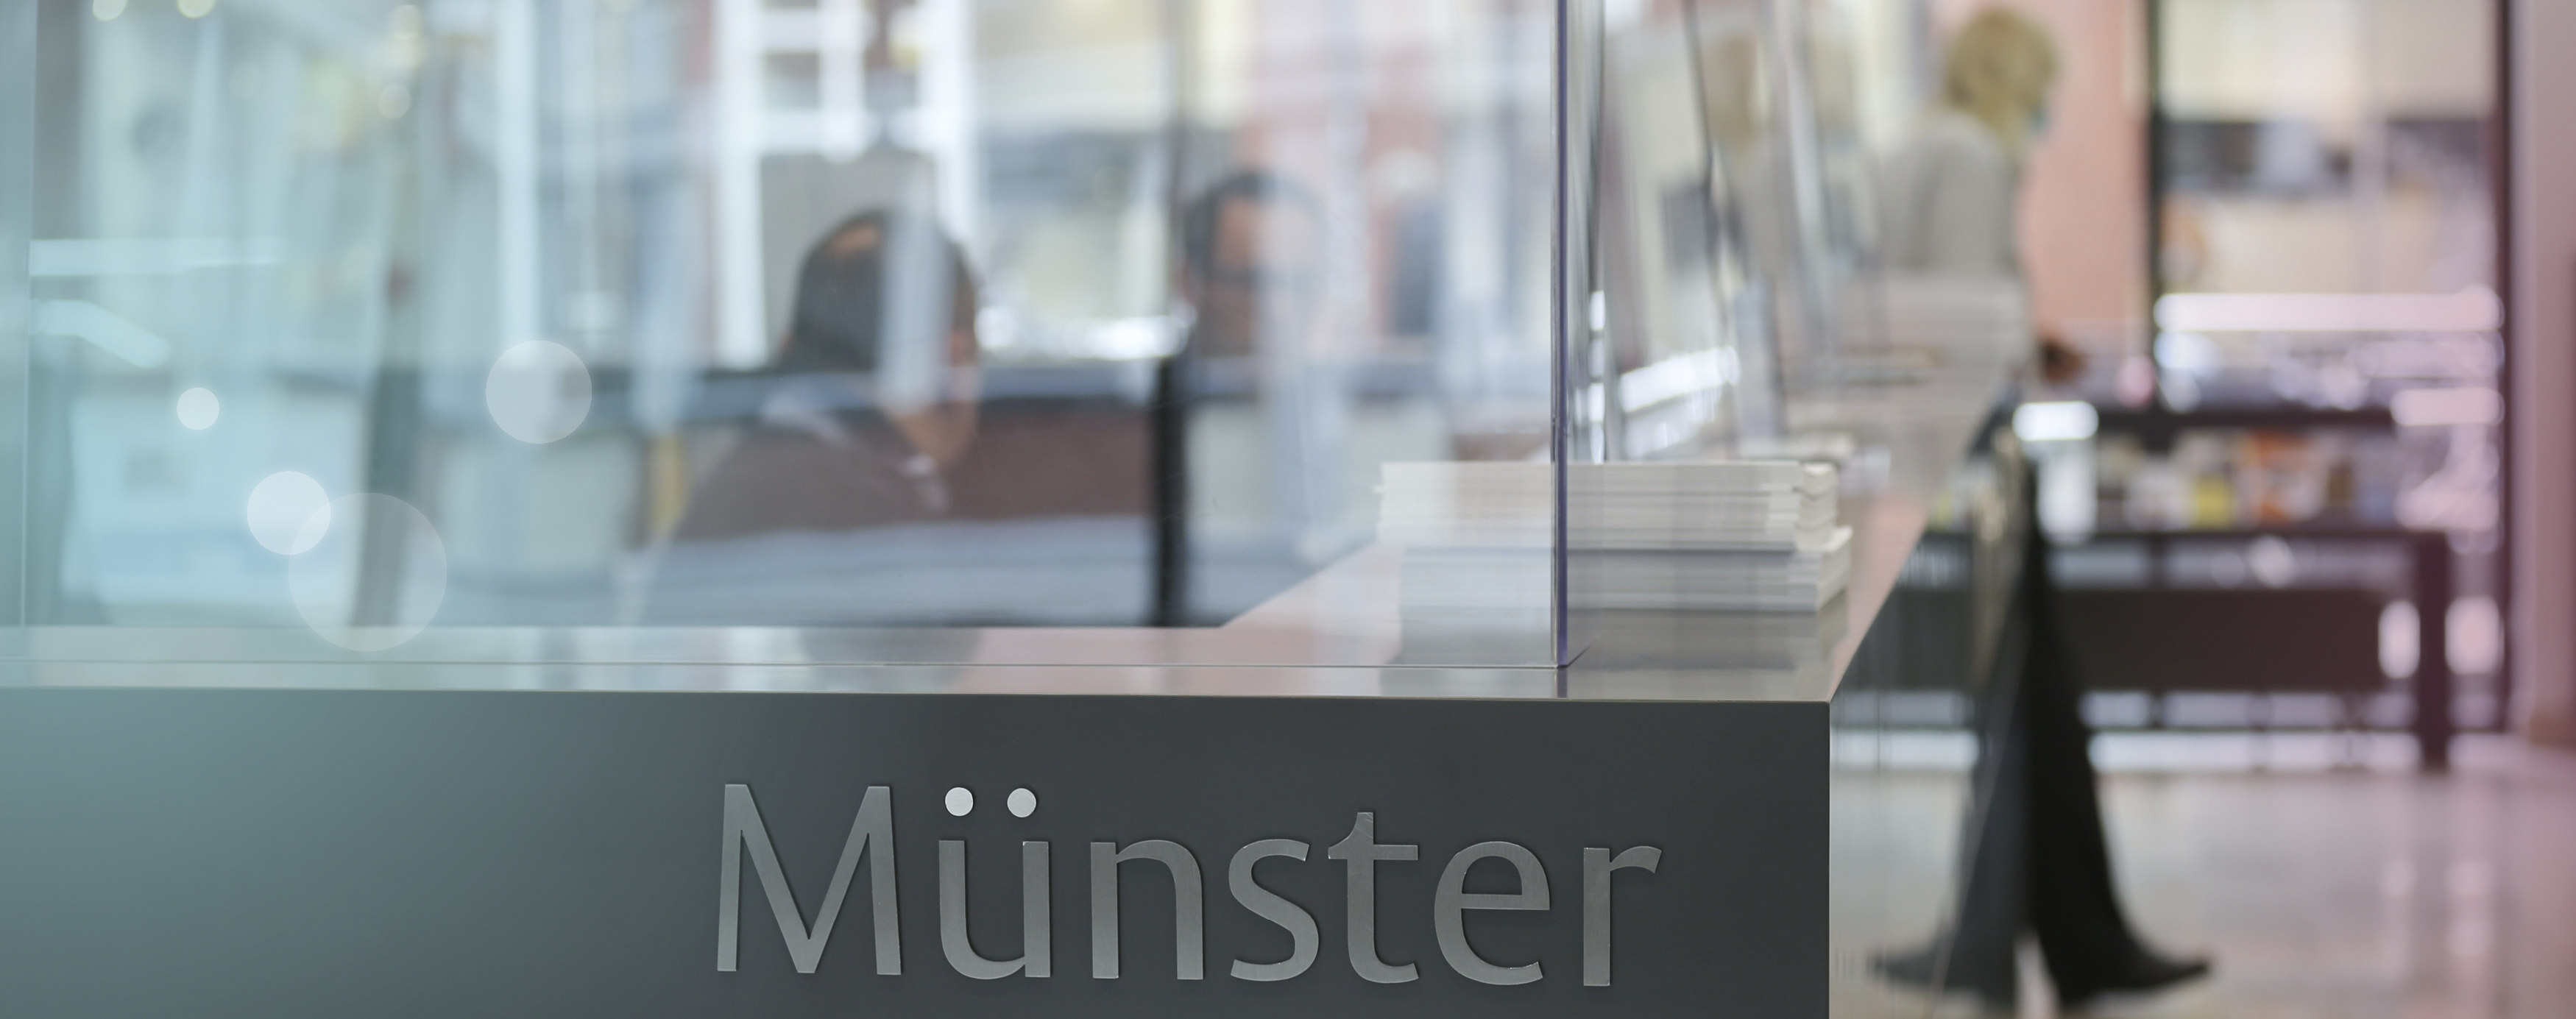 Eine graue Theke mit Glaswänden steht, mit dem Schriftzug "Münster" im Vordergrund, dahinter unscharf zu sehen sind Menschen die dort arbeiten und beraten.